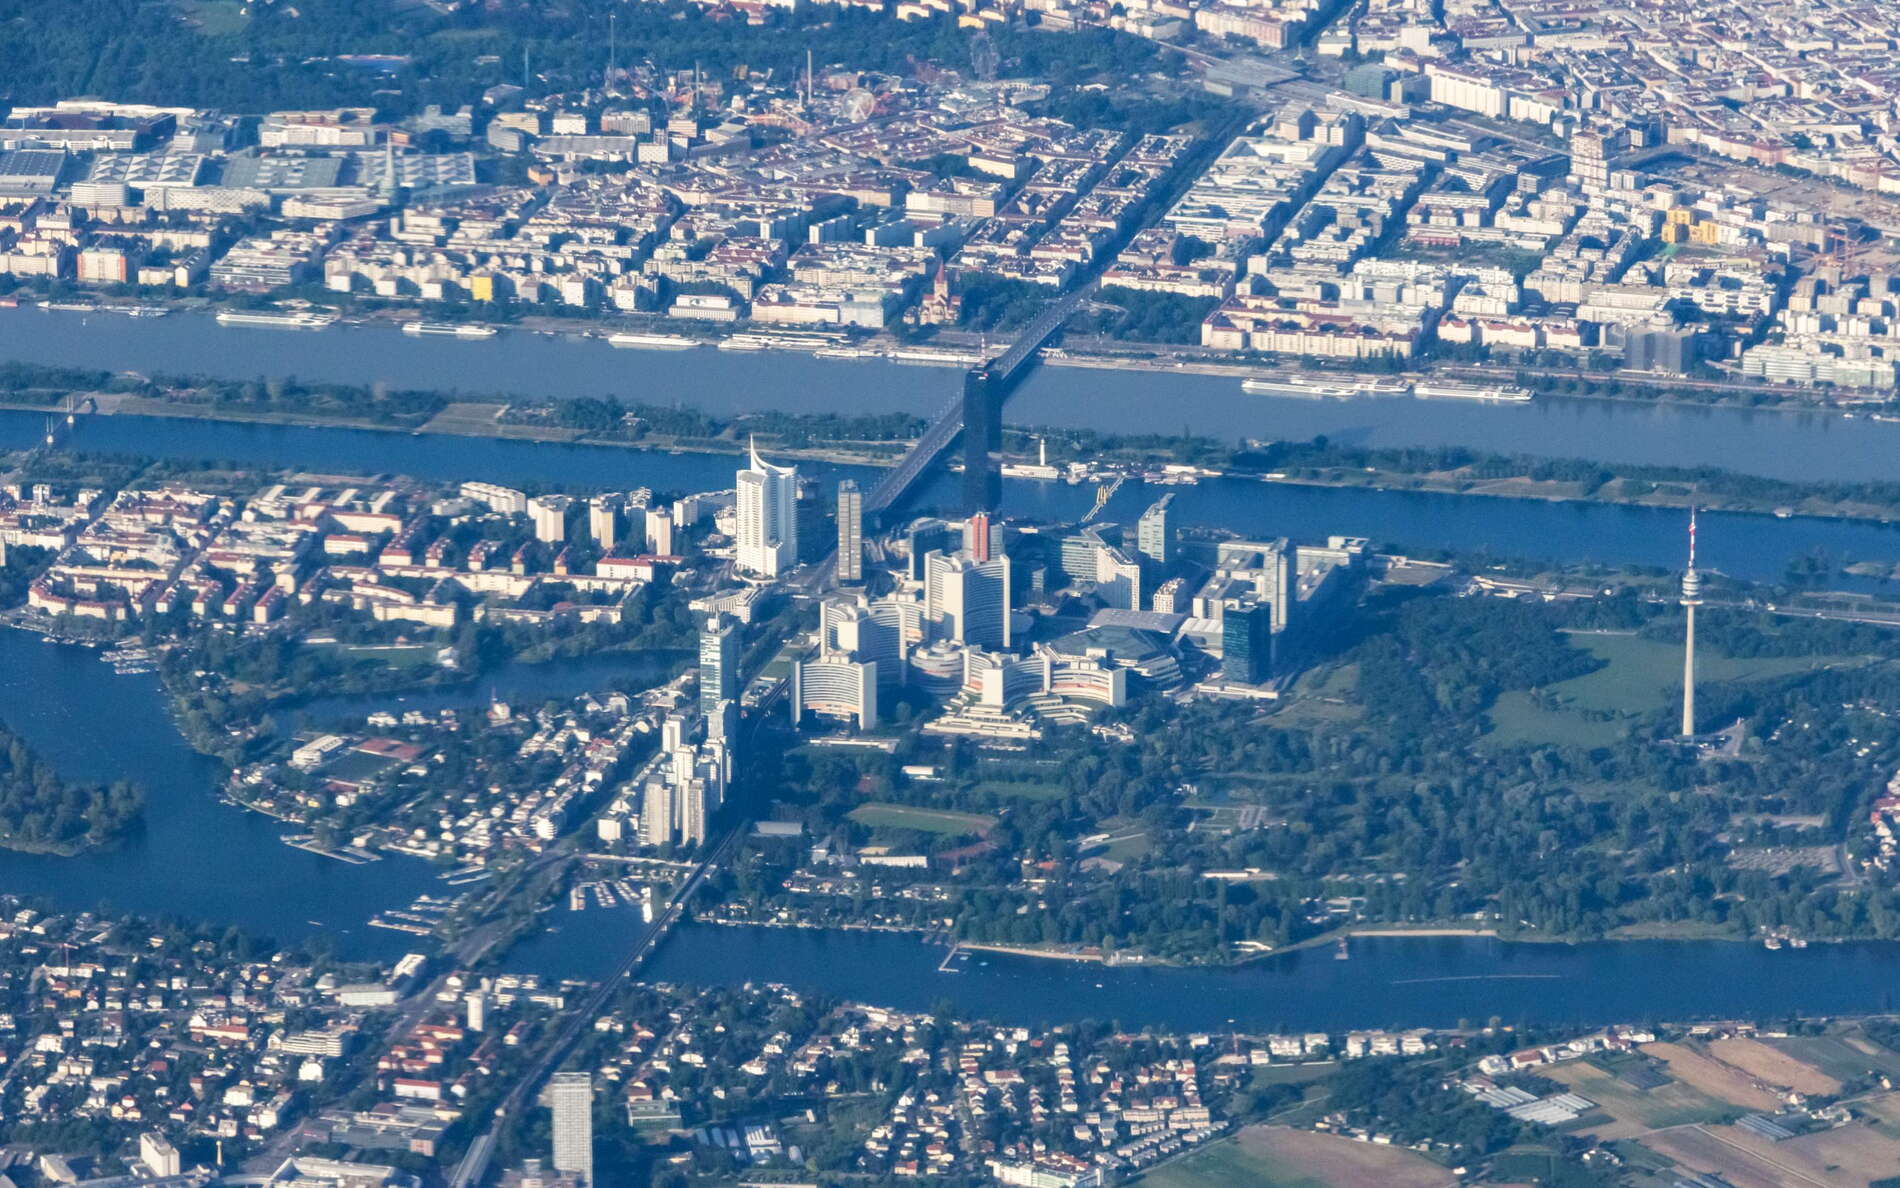 Wien | Kaisermühlen with Alte Donau and Donau